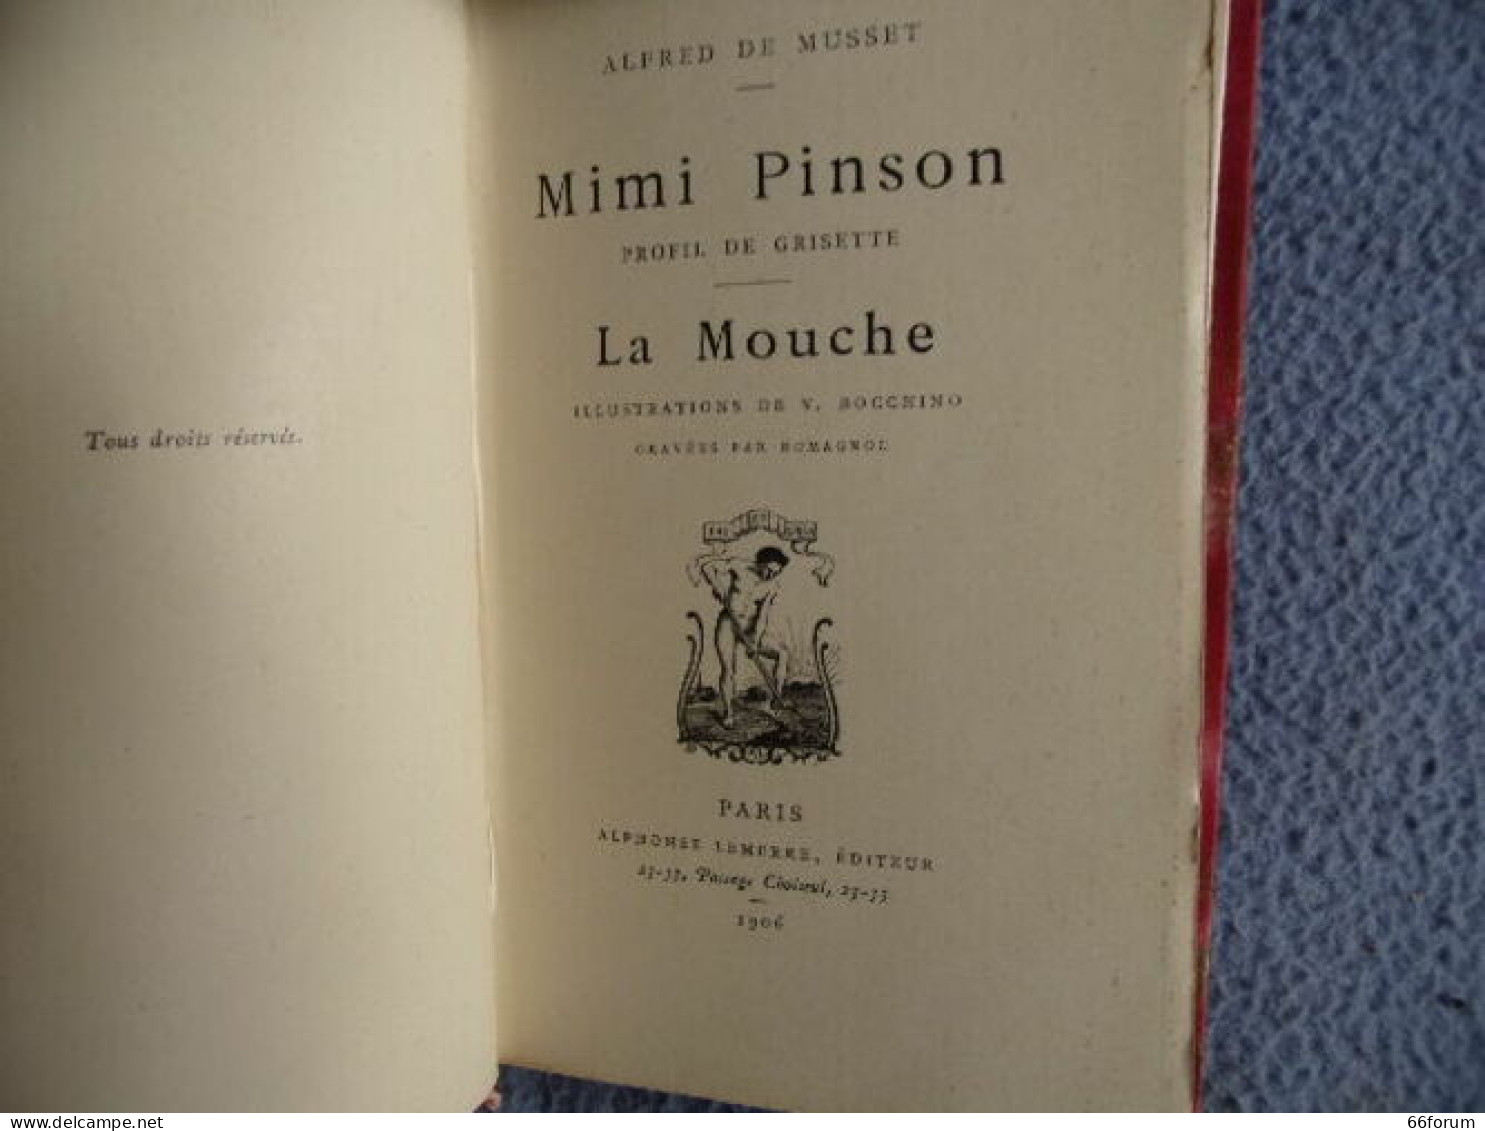 Mimi Pinson Profil De Grisette- La Mouche - 1801-1900